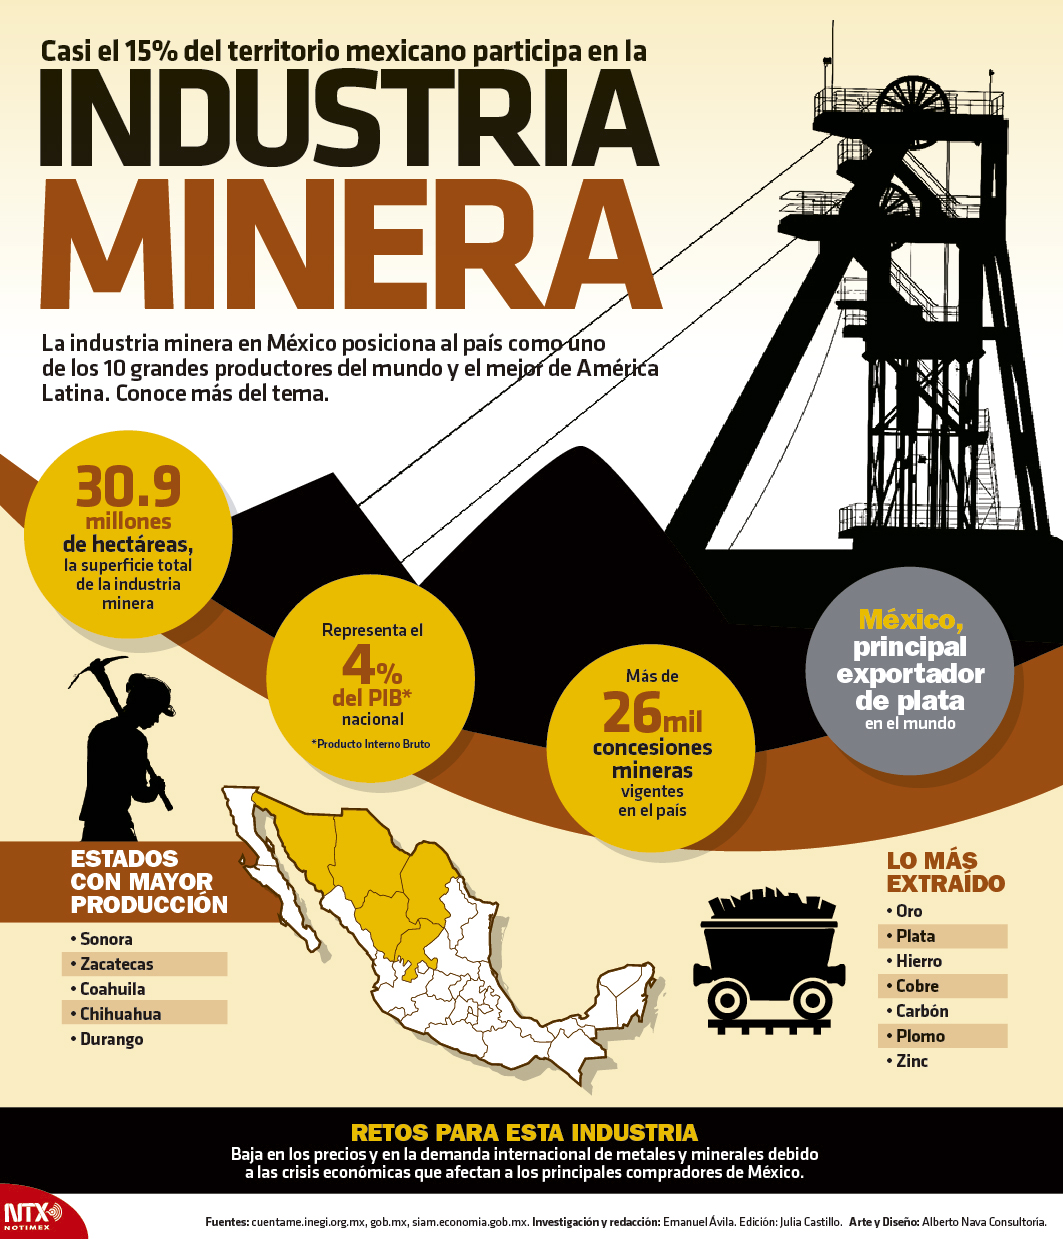 Casi el 15% del territorio mexicano participa en la industria minera